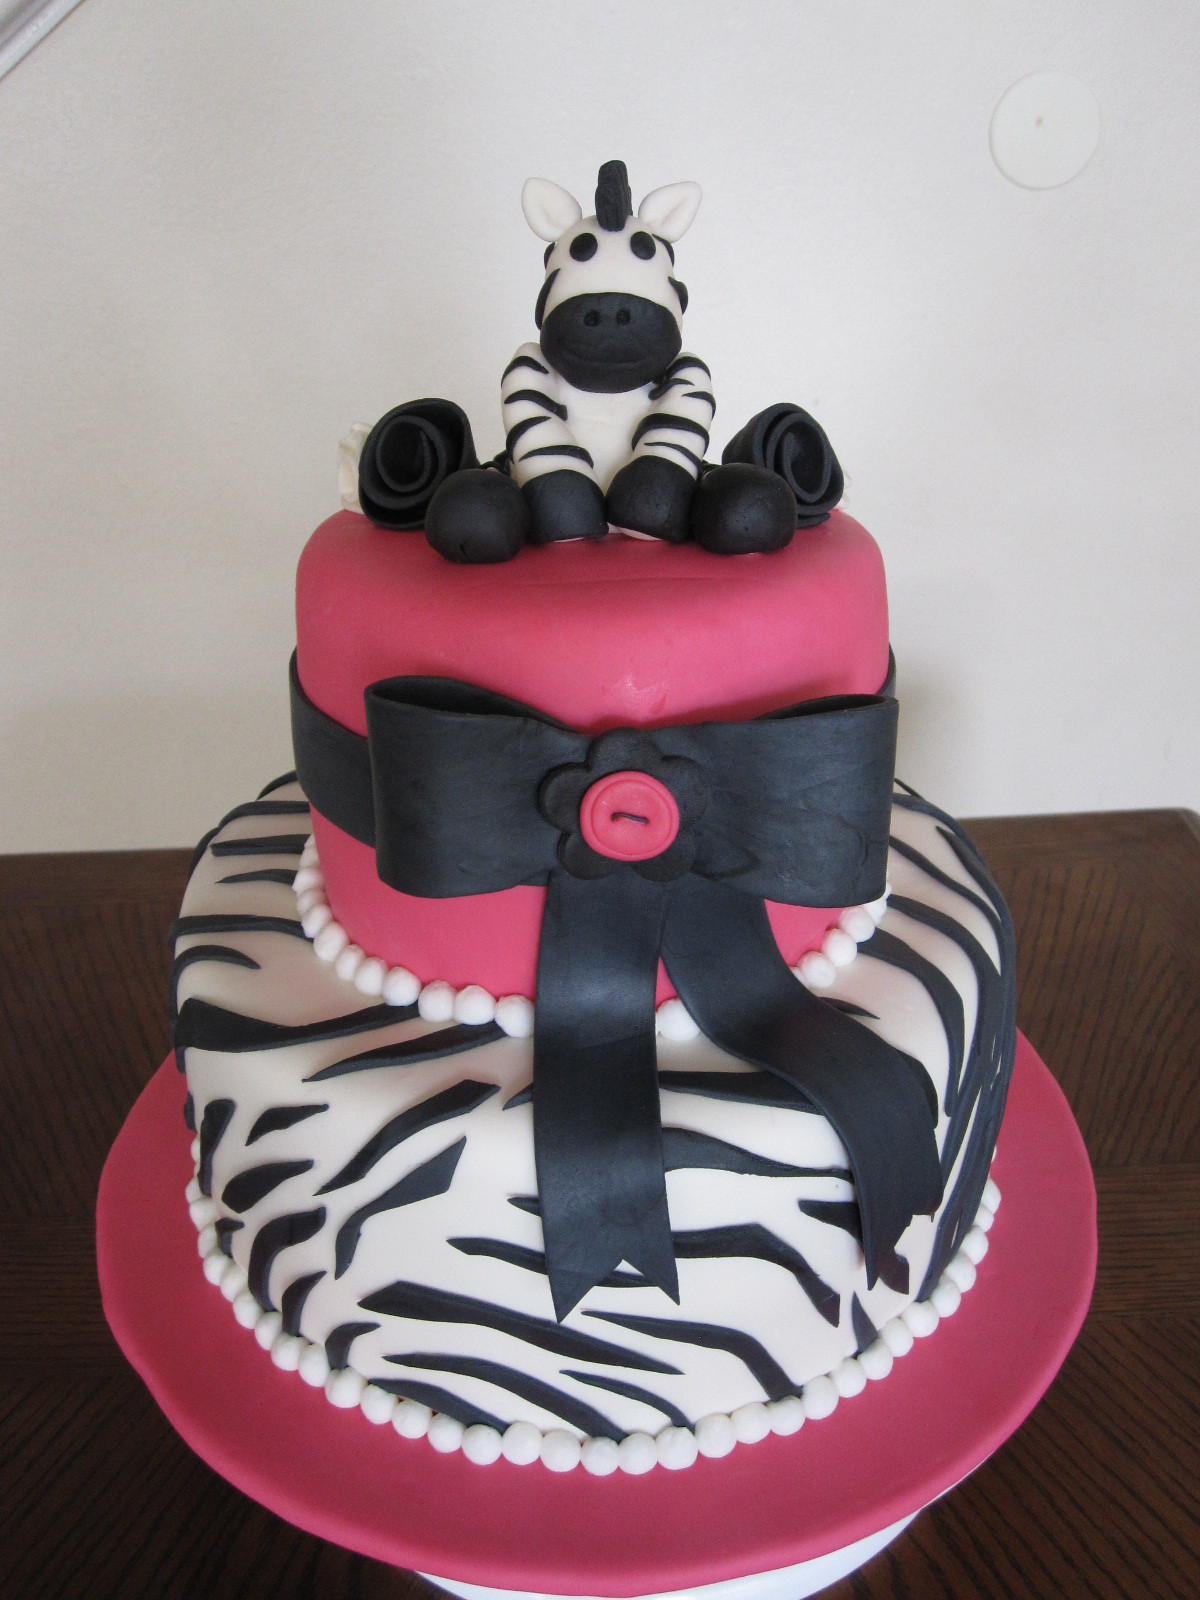 Zebra Birthday Cake
 Zebra Cakes – Decoration Ideas